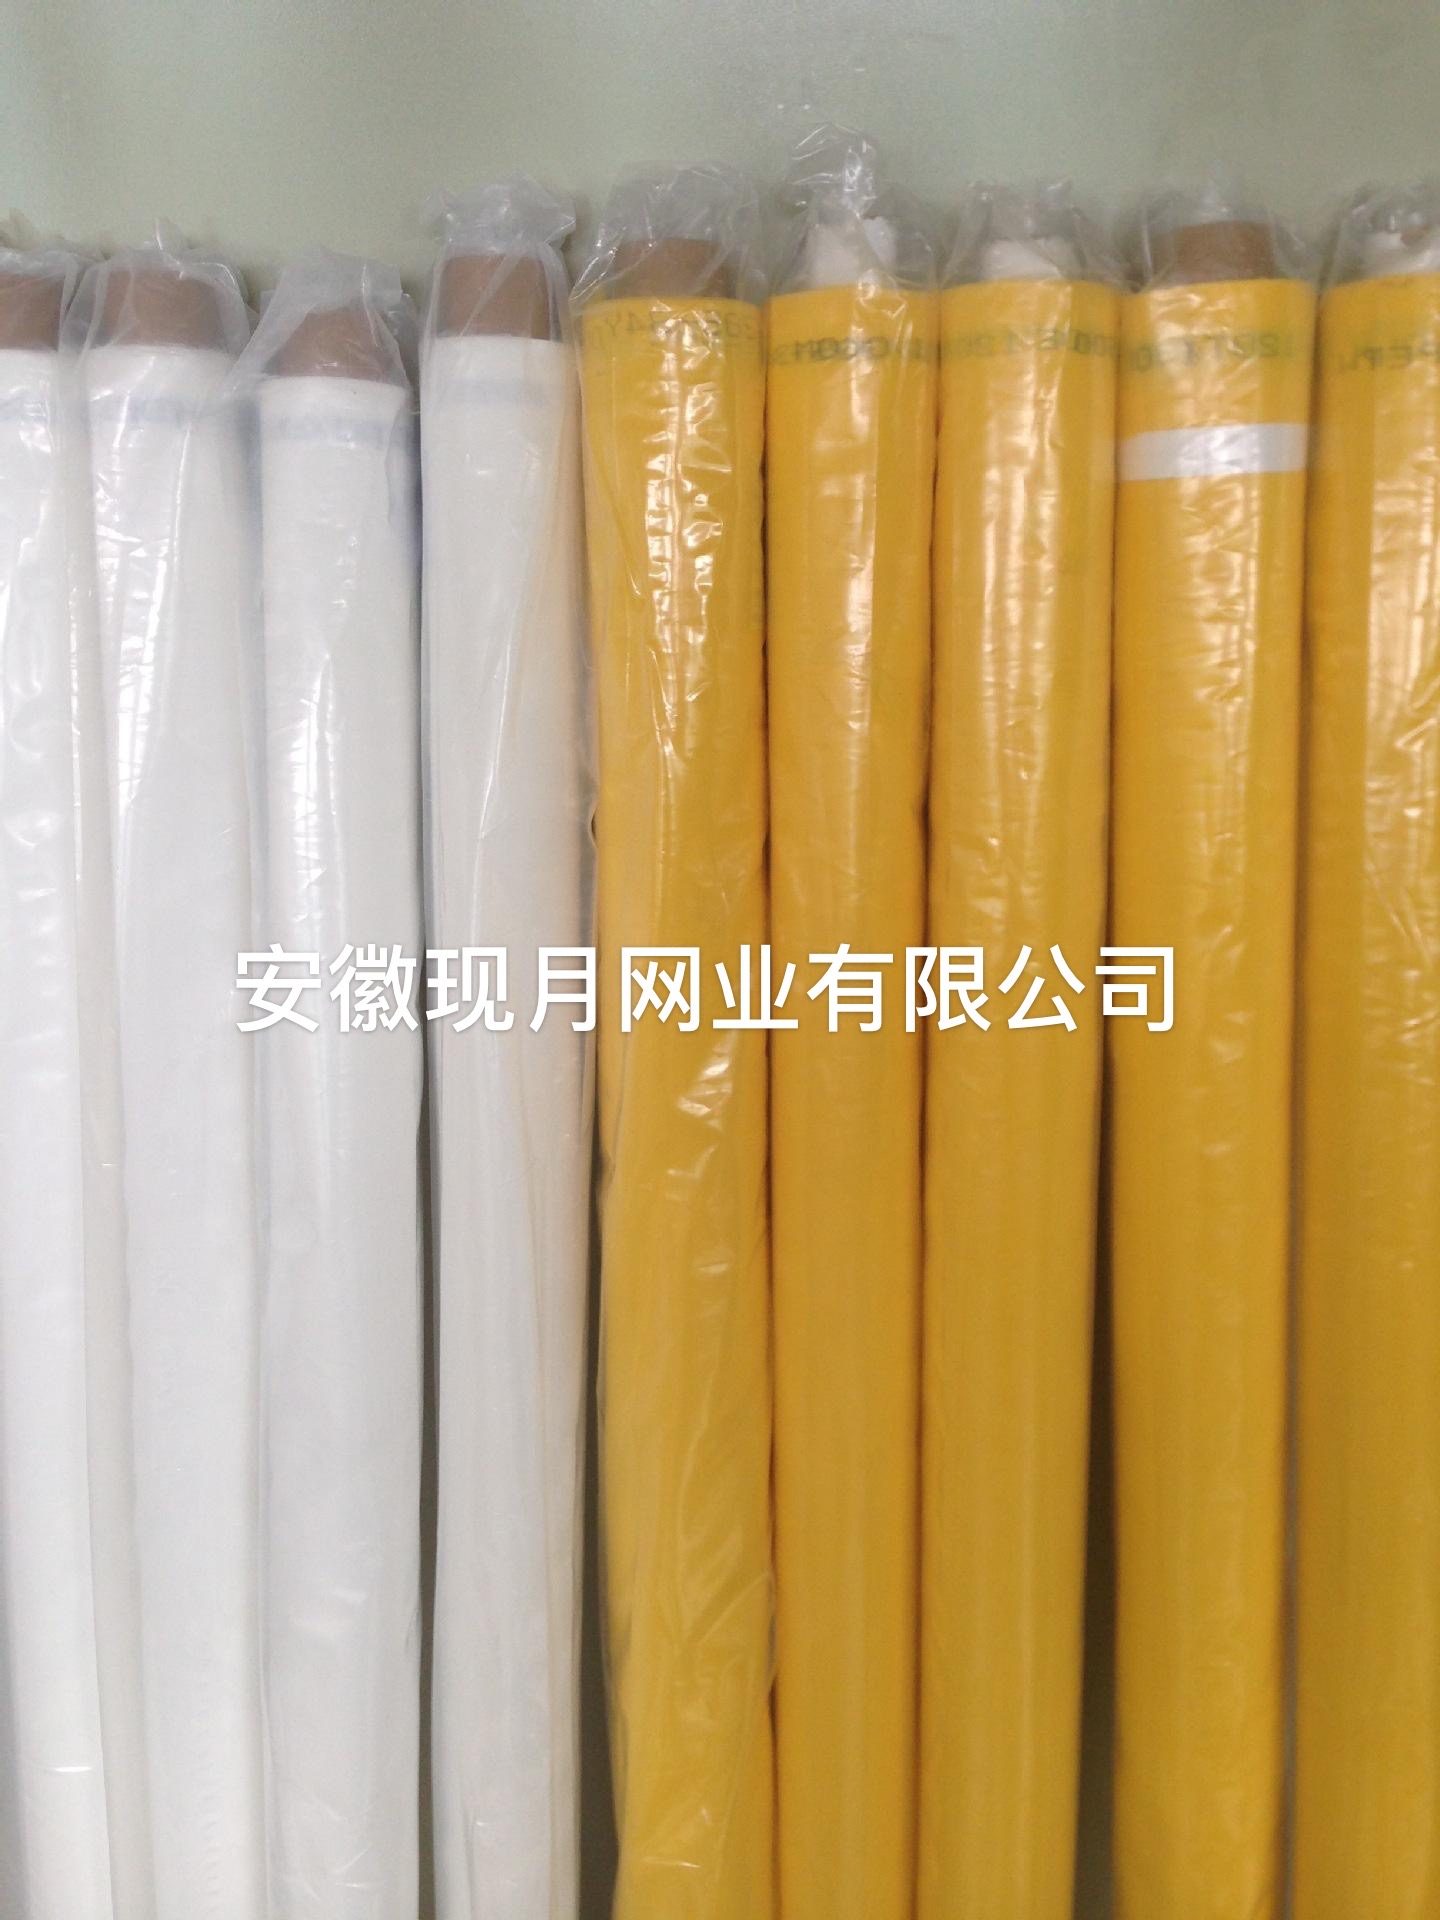 厂家提供高耐磨丝印网纱200目-77T印制电路板印刷网纱 现月厂家生产